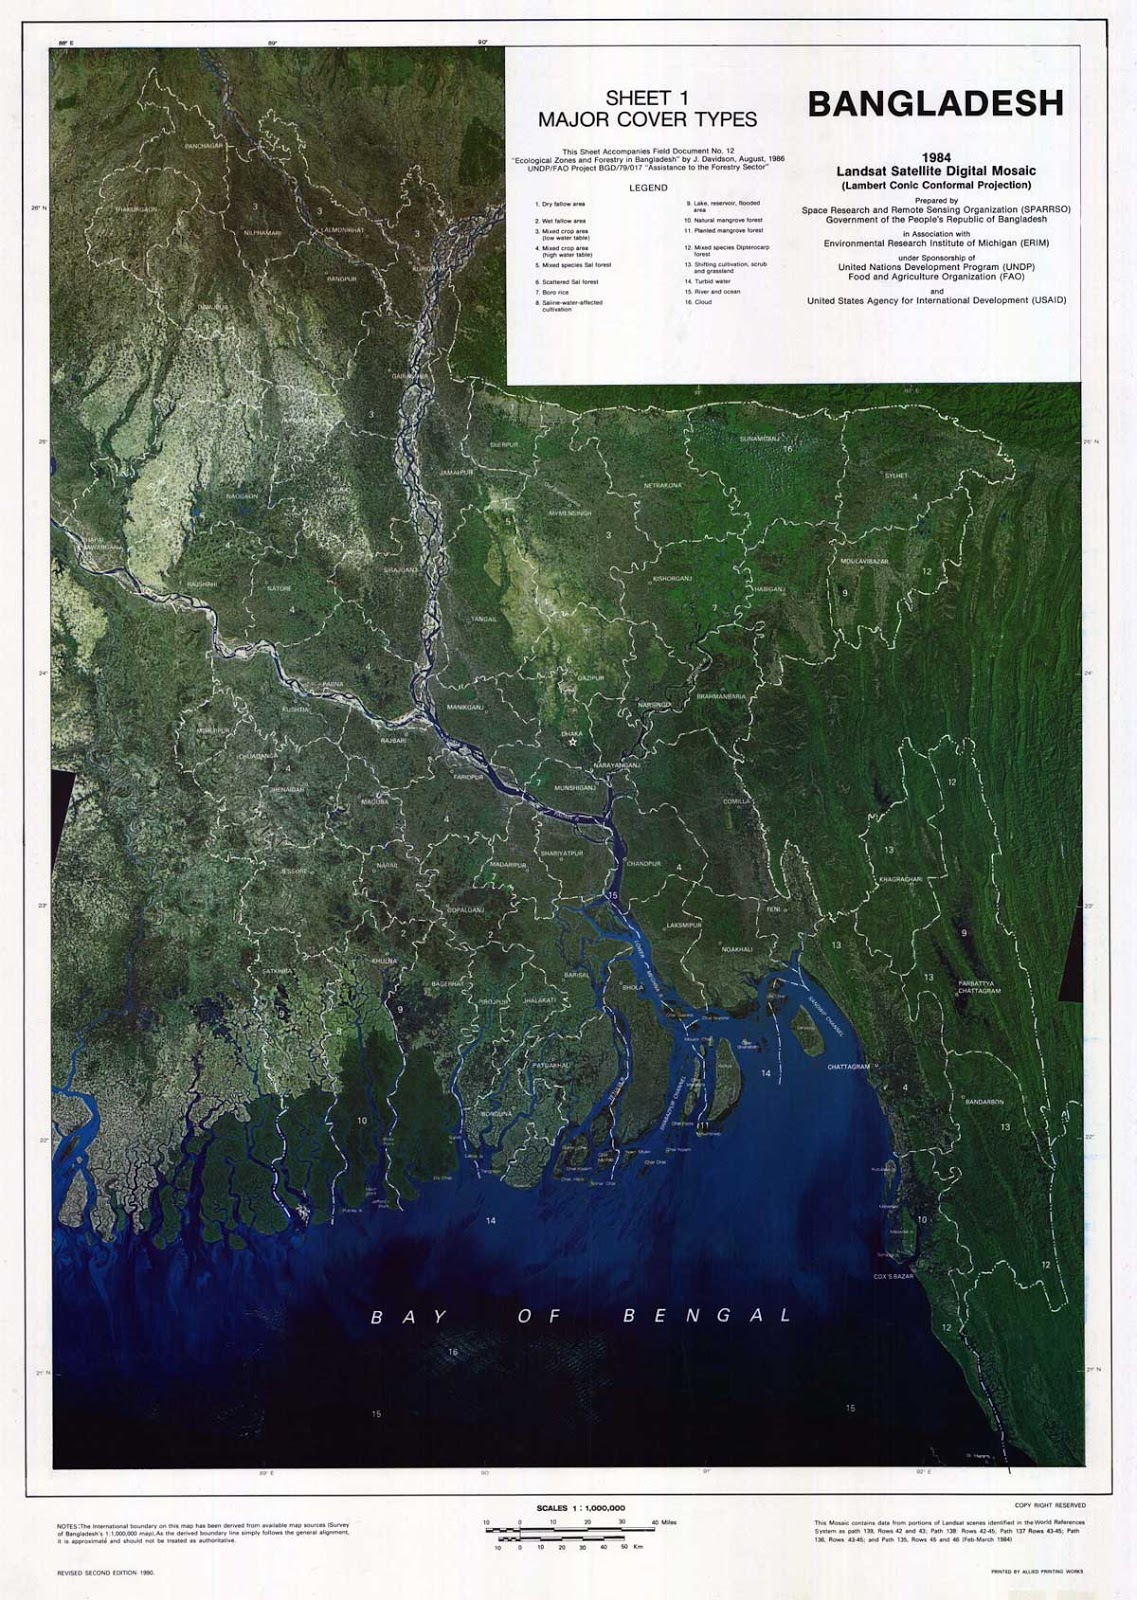 Landsat (TM) Satellite Digital Mosaic Image of Bangladesh